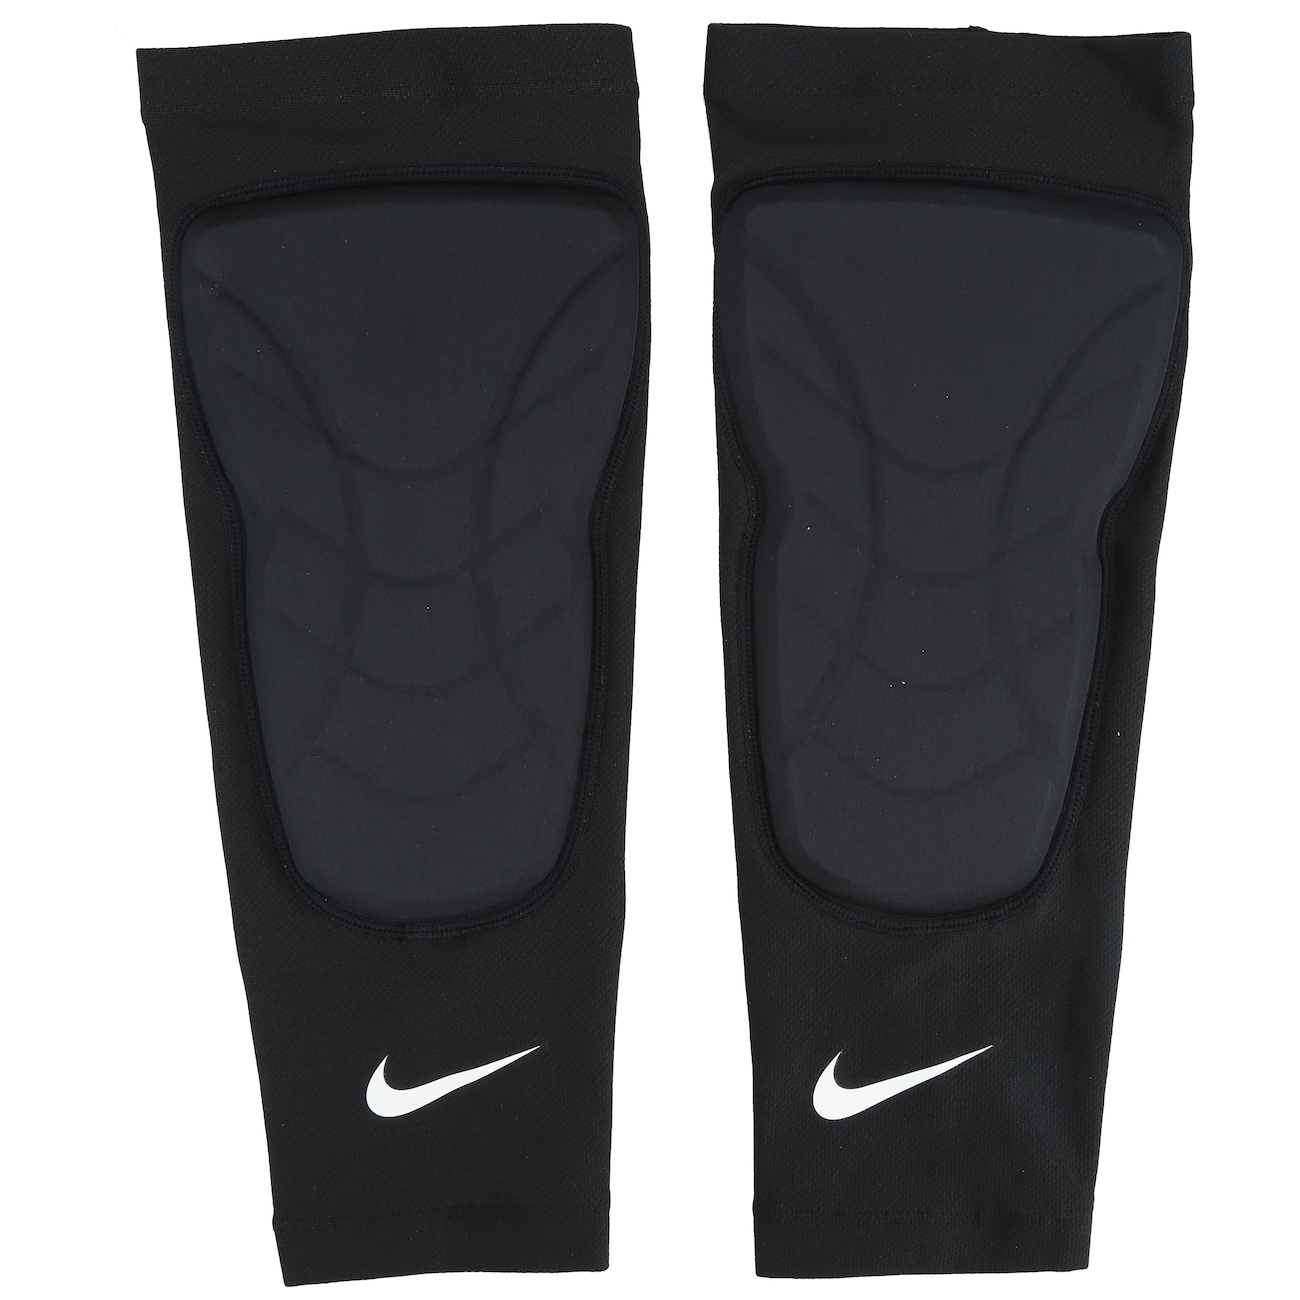 Caneleira de Basquete Nike Hyperstrong Padded Shin Sleeves - Adulto